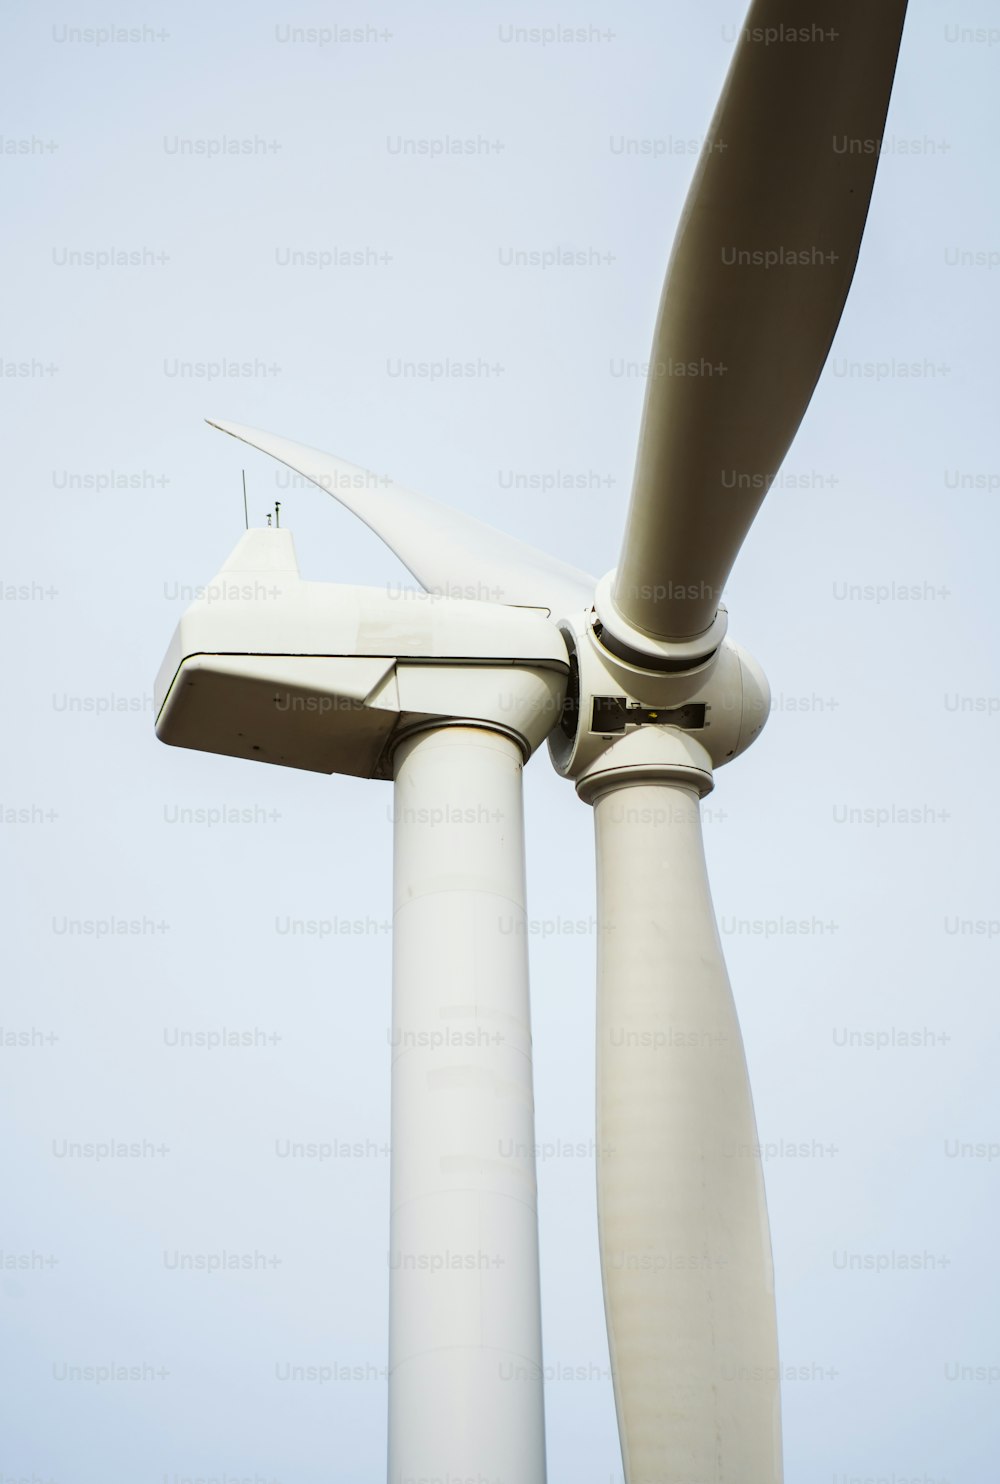 Un primo piano di una turbina eolica in una giornata limpida